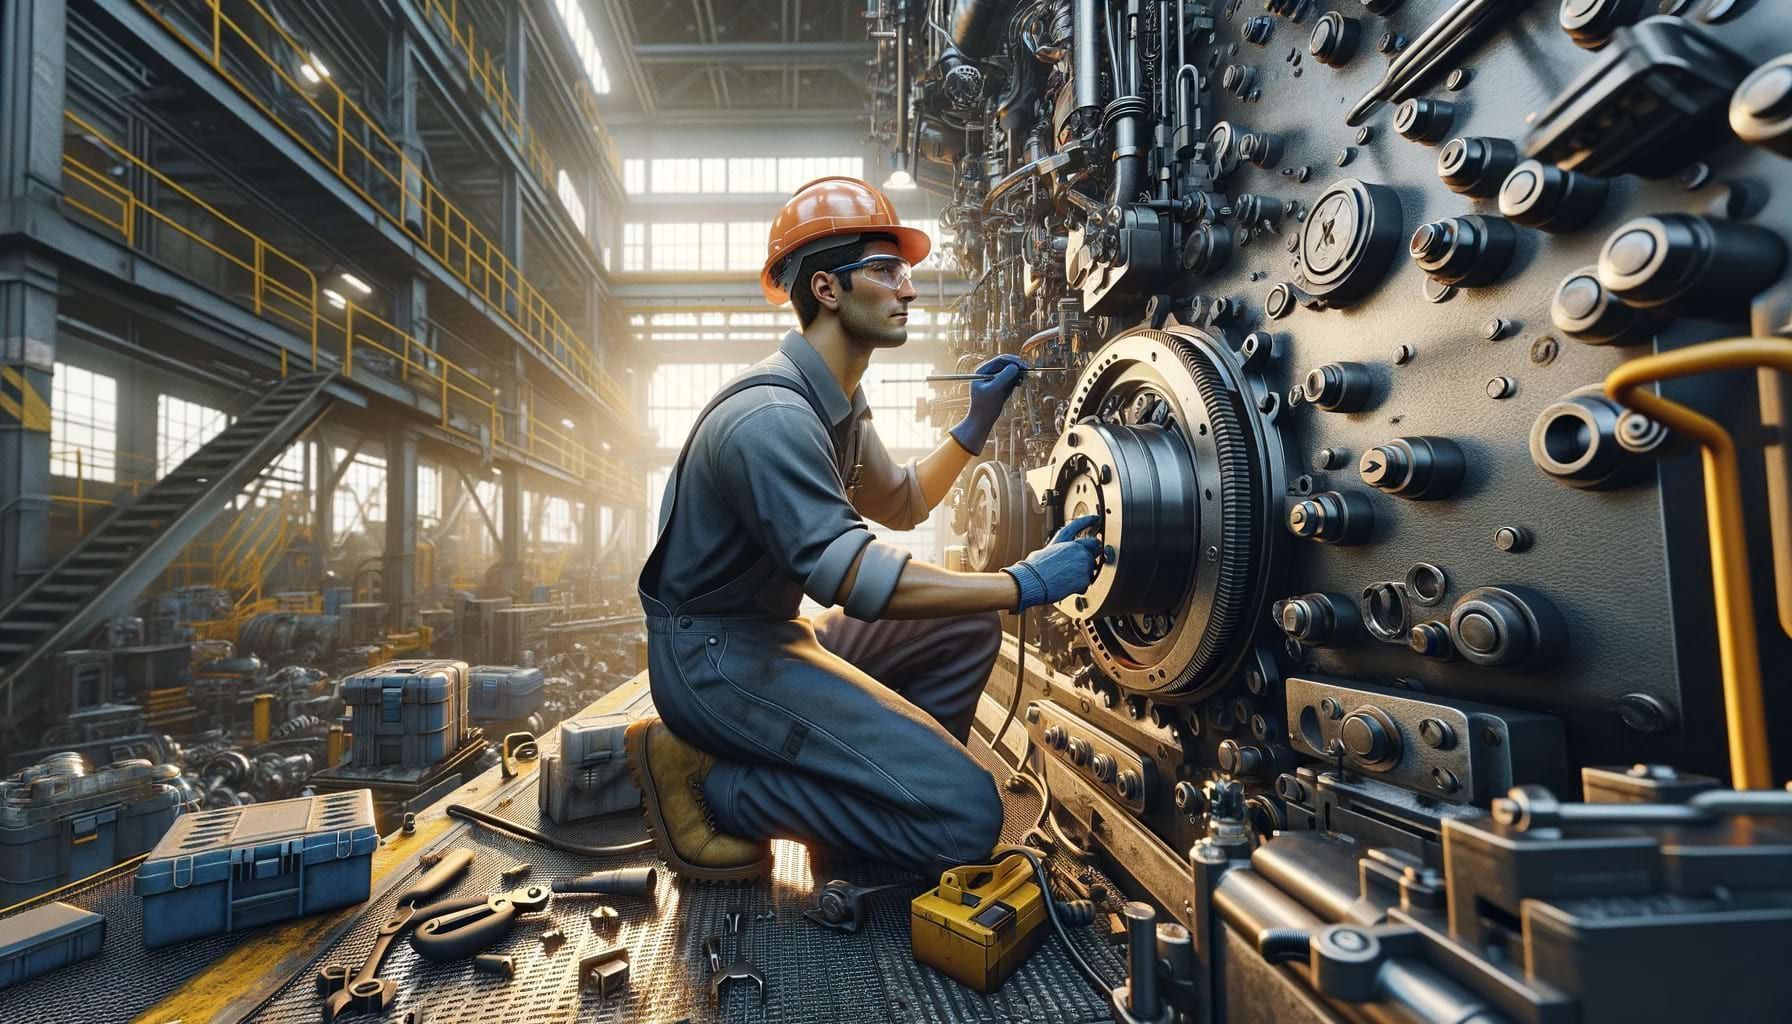 Mecânico industrial trabalhando com precisão em maquinário pesado, ilustrando habilidade e profissionalismo no ambiente industrial